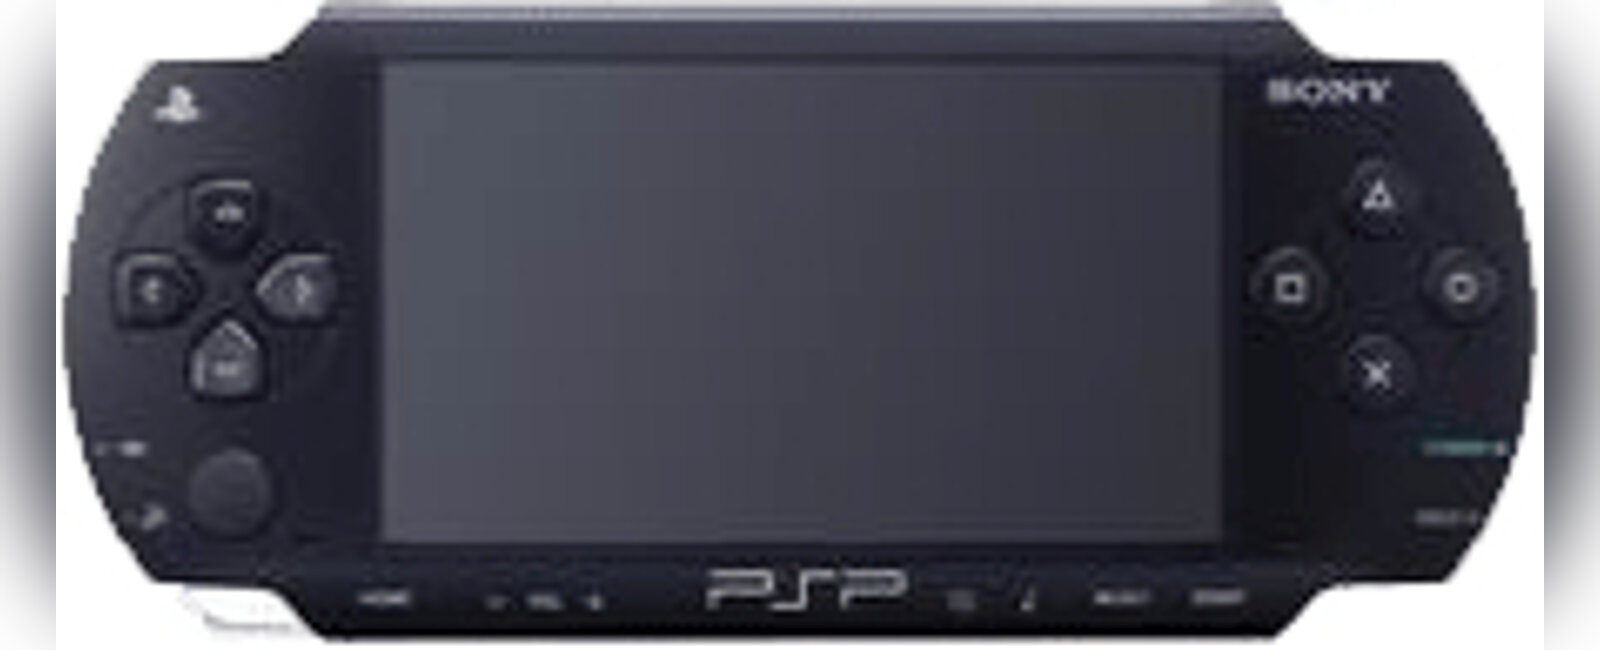 Как установить игры для PSP на карту памяти